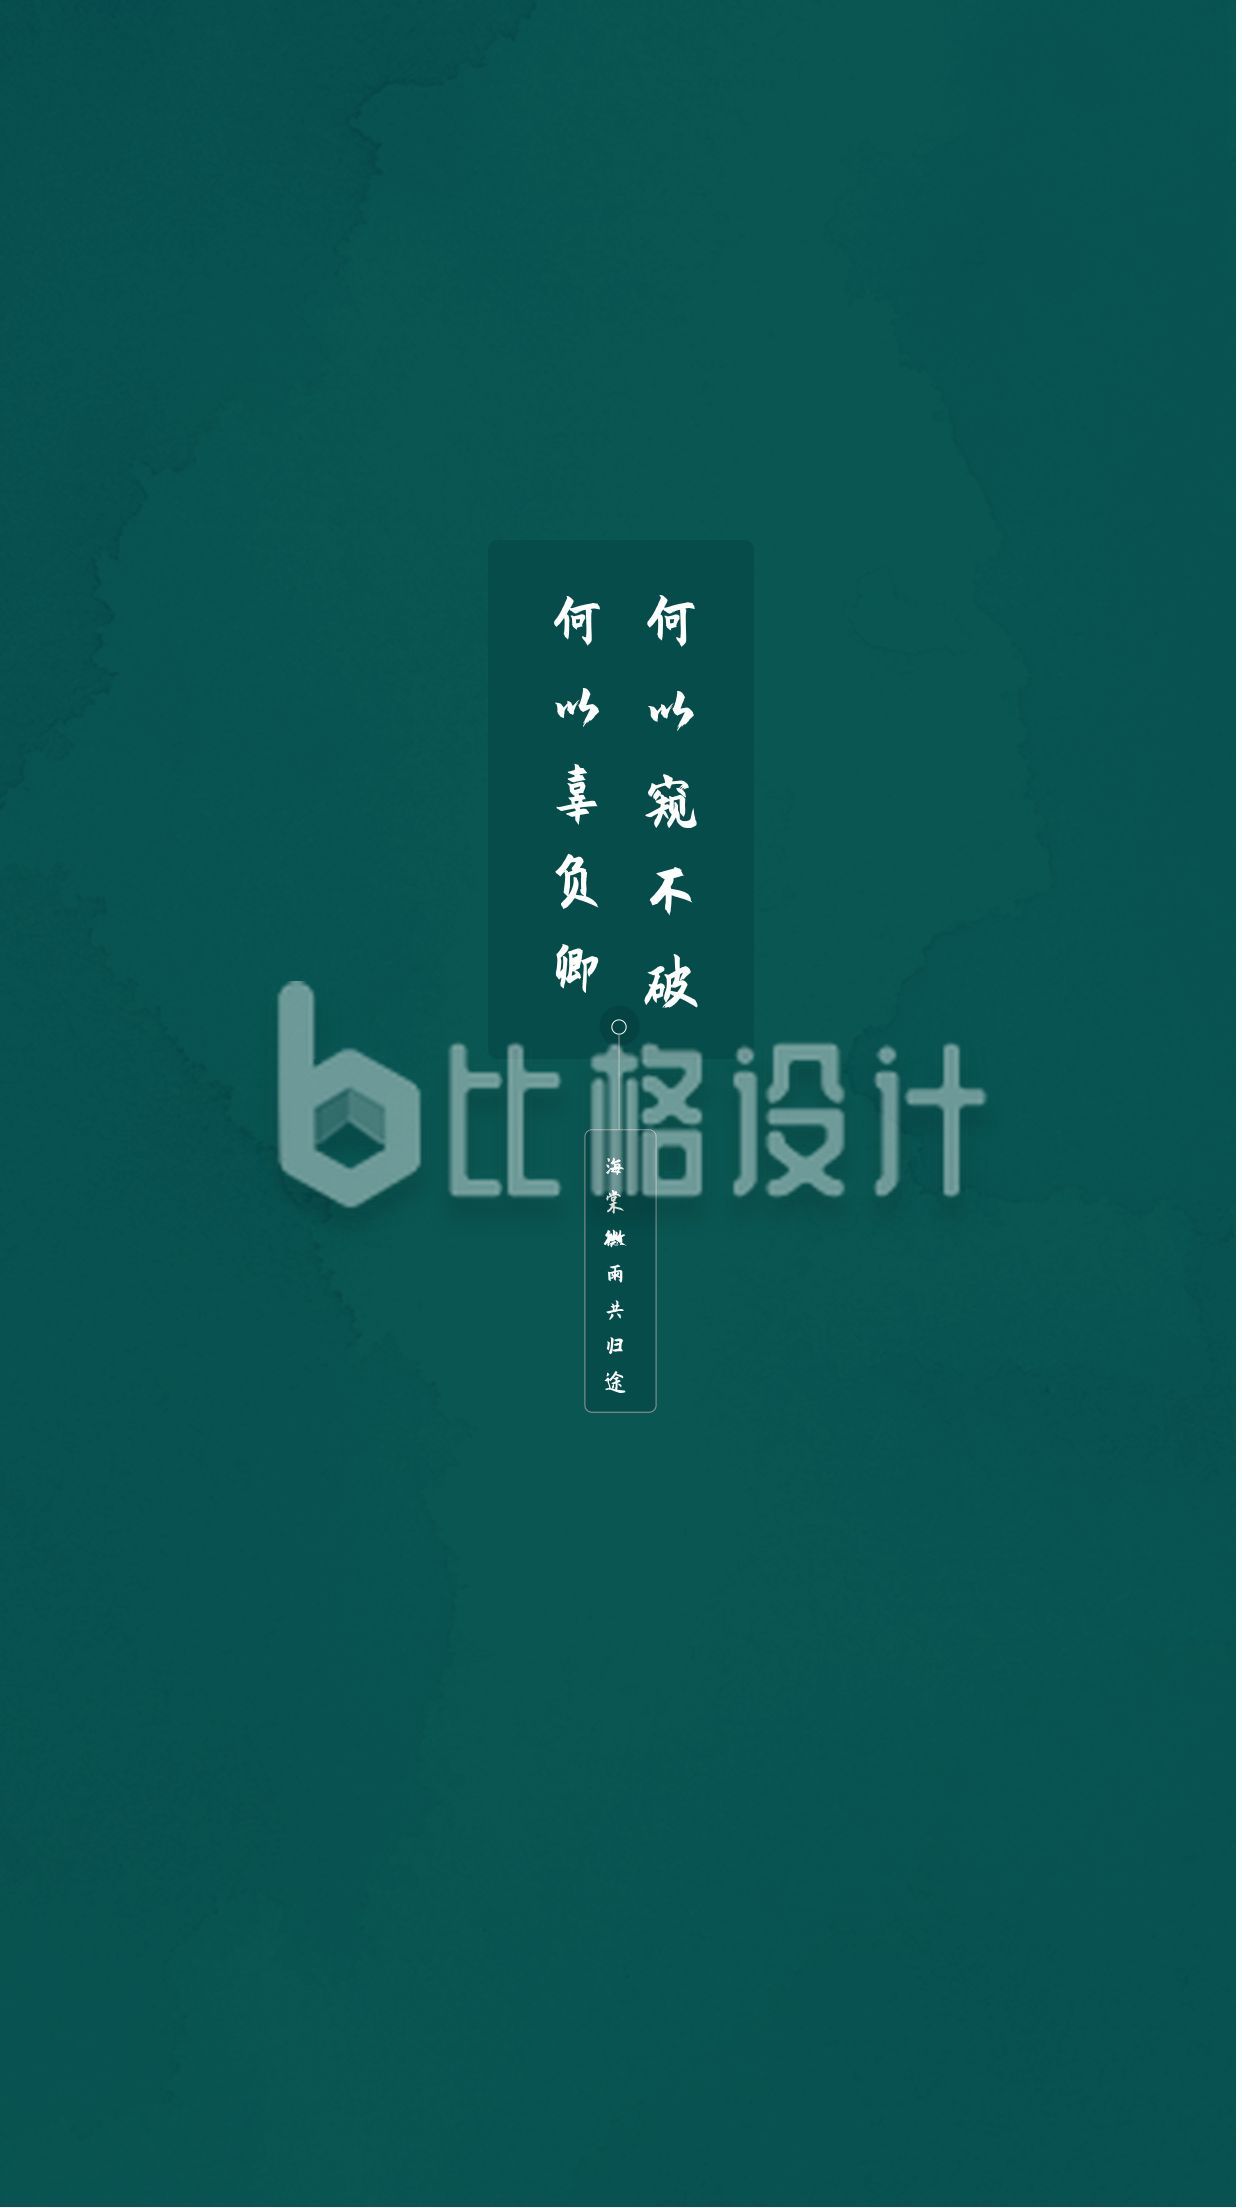 海棠墨绿中国风文字壁纸